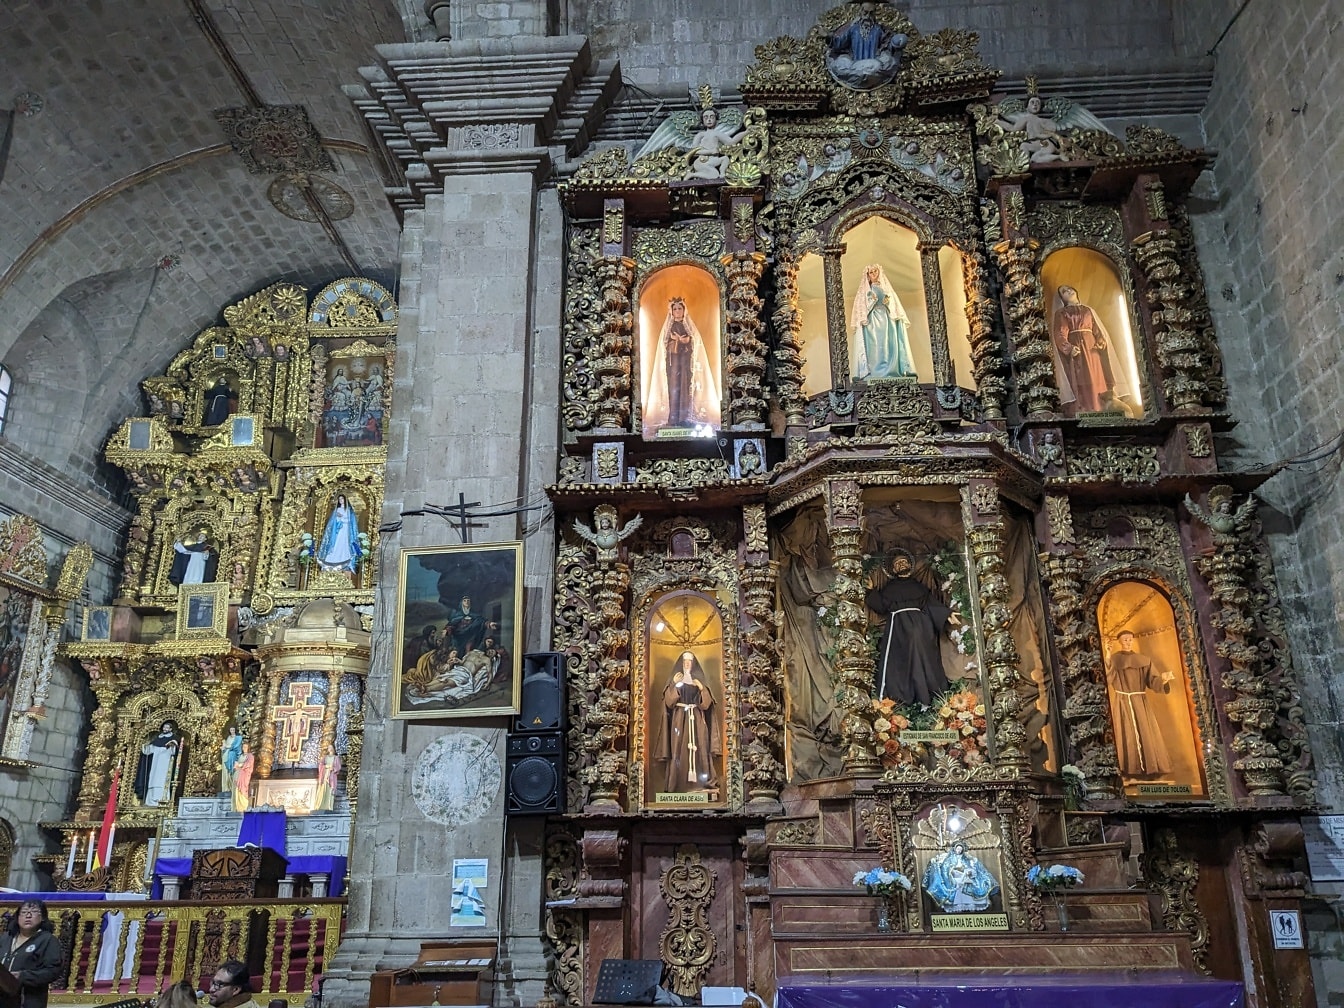 Binnenland van kerk met verfraaid altaar met beelden van heiligen in traditionele Latijns-Amerikaanse stijl